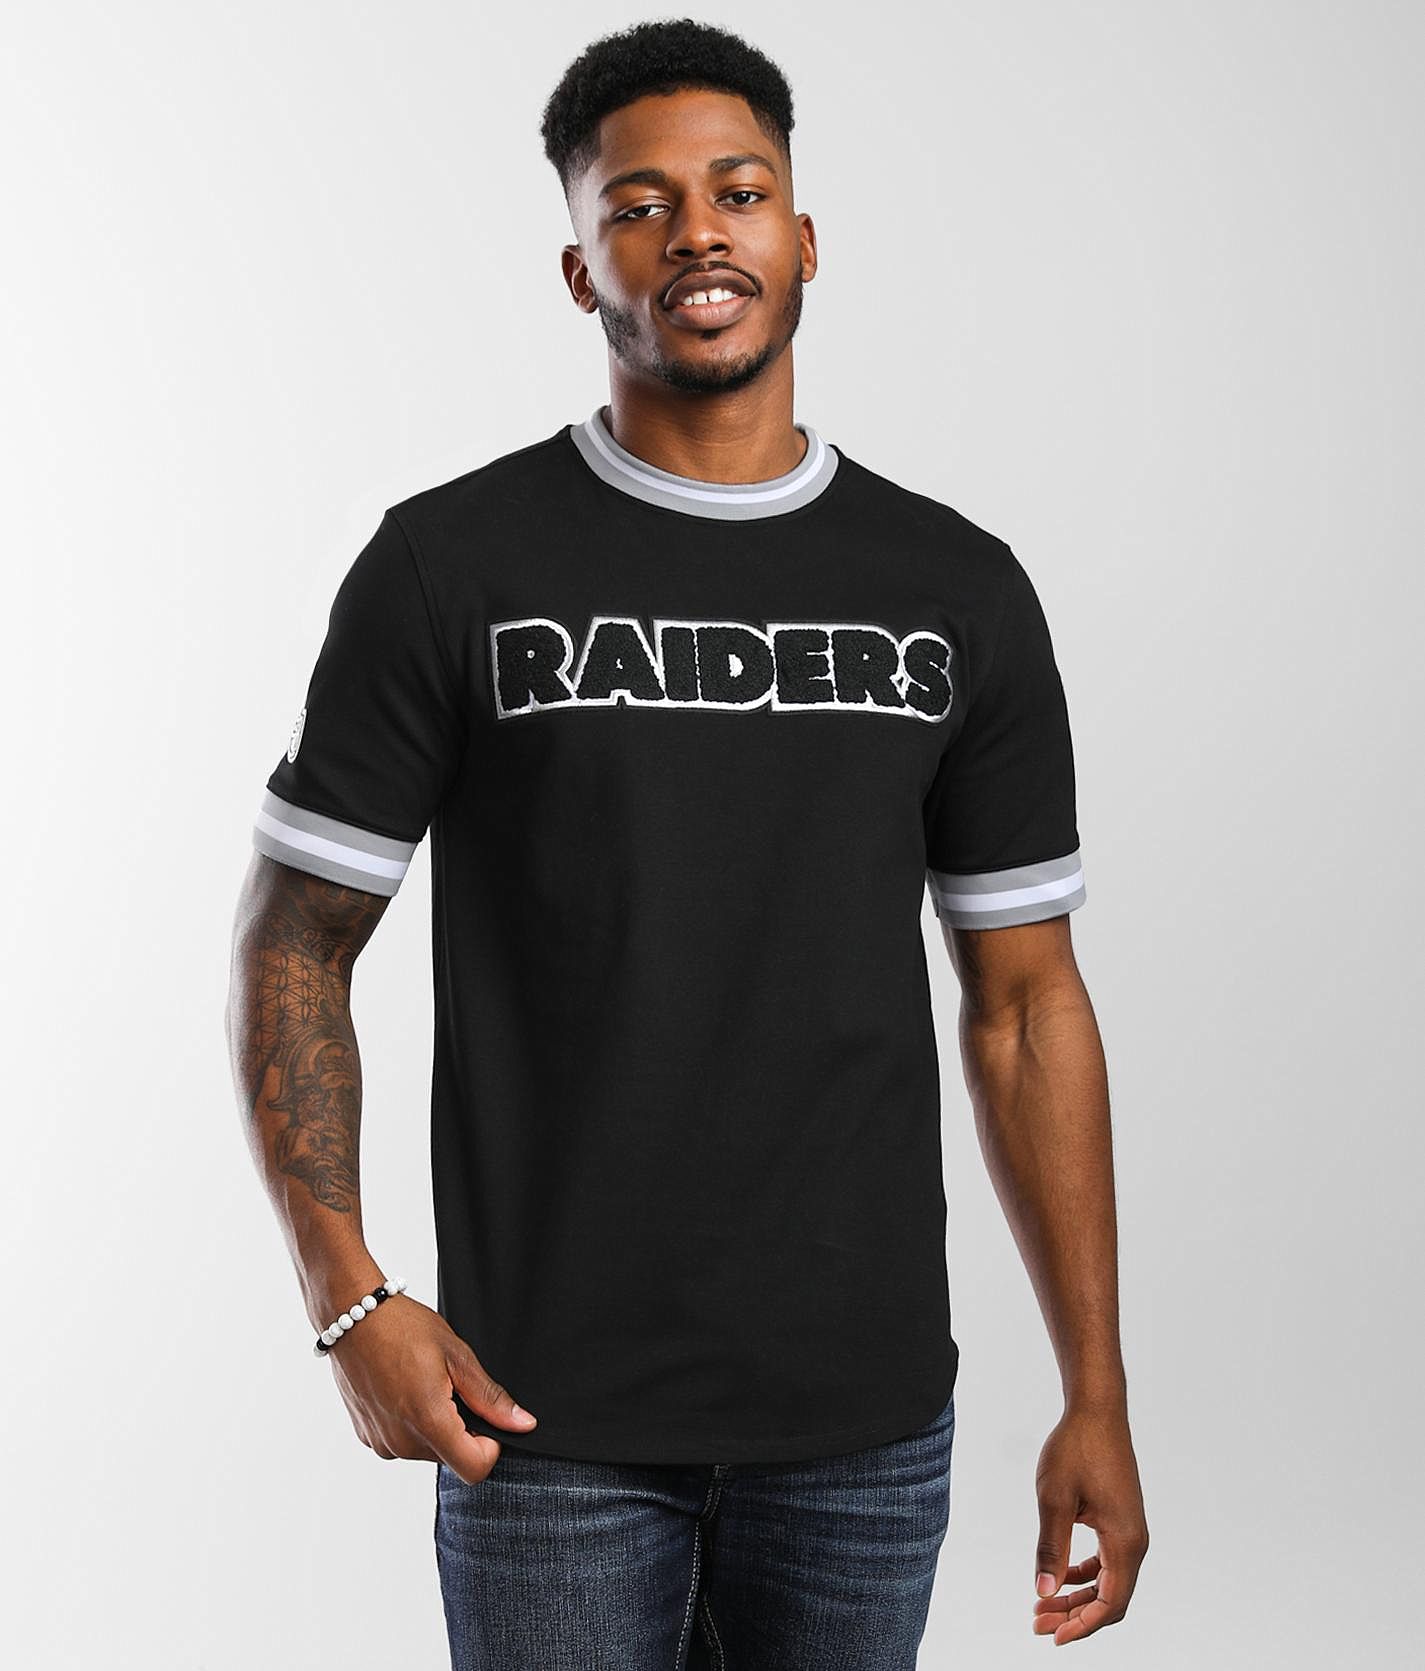 Men's Pro Standard Black Las Vegas Raiders Championship T-Shirt